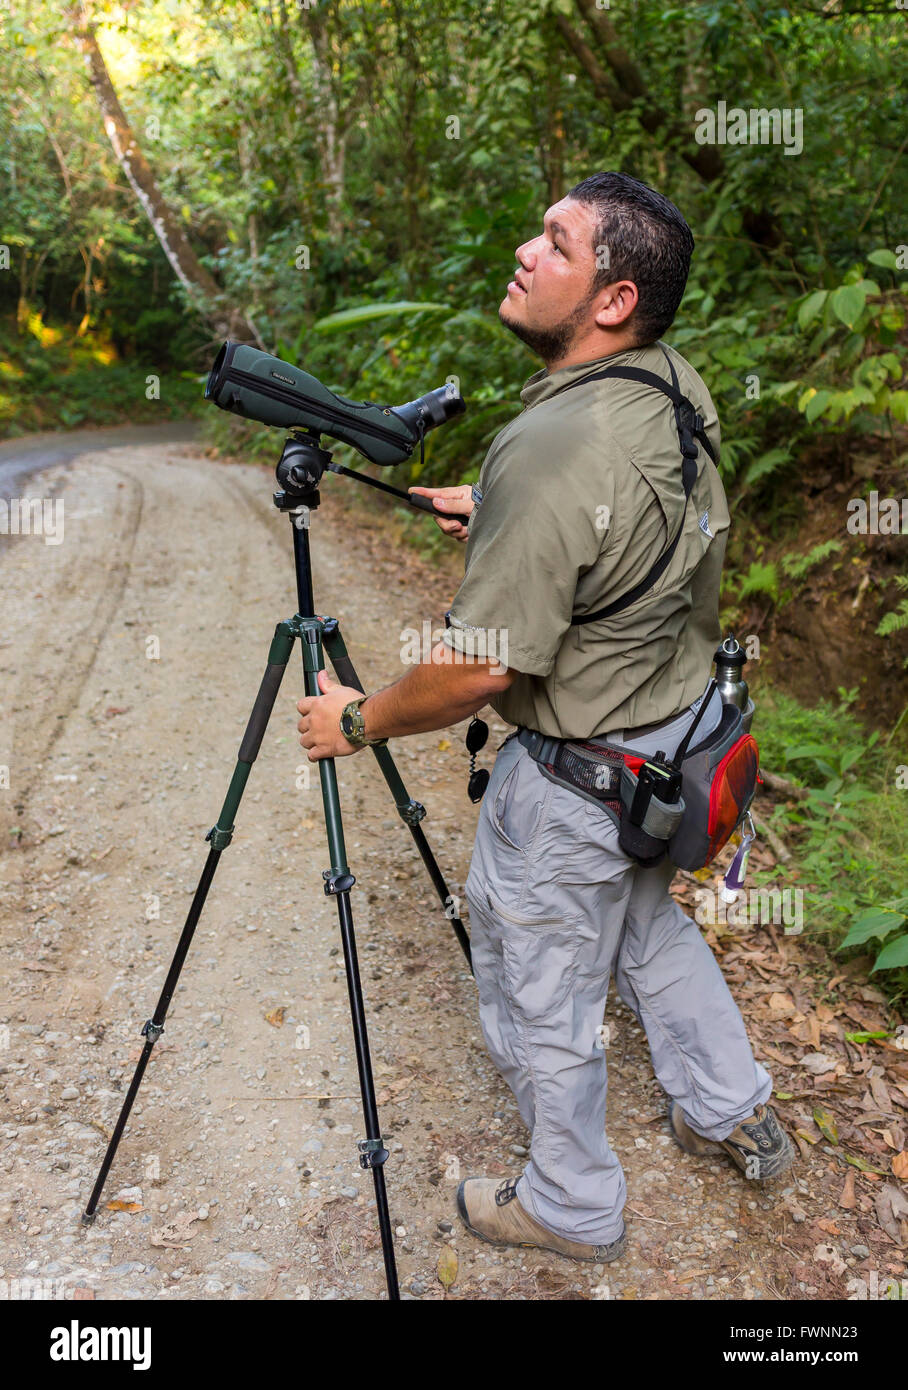 Península de Osa, Costa Rica - Ecoturismo guía naturalista con Spotting Scope sobre trípode, visualización de fauna silvestre en bosques tropicales. Foto de stock